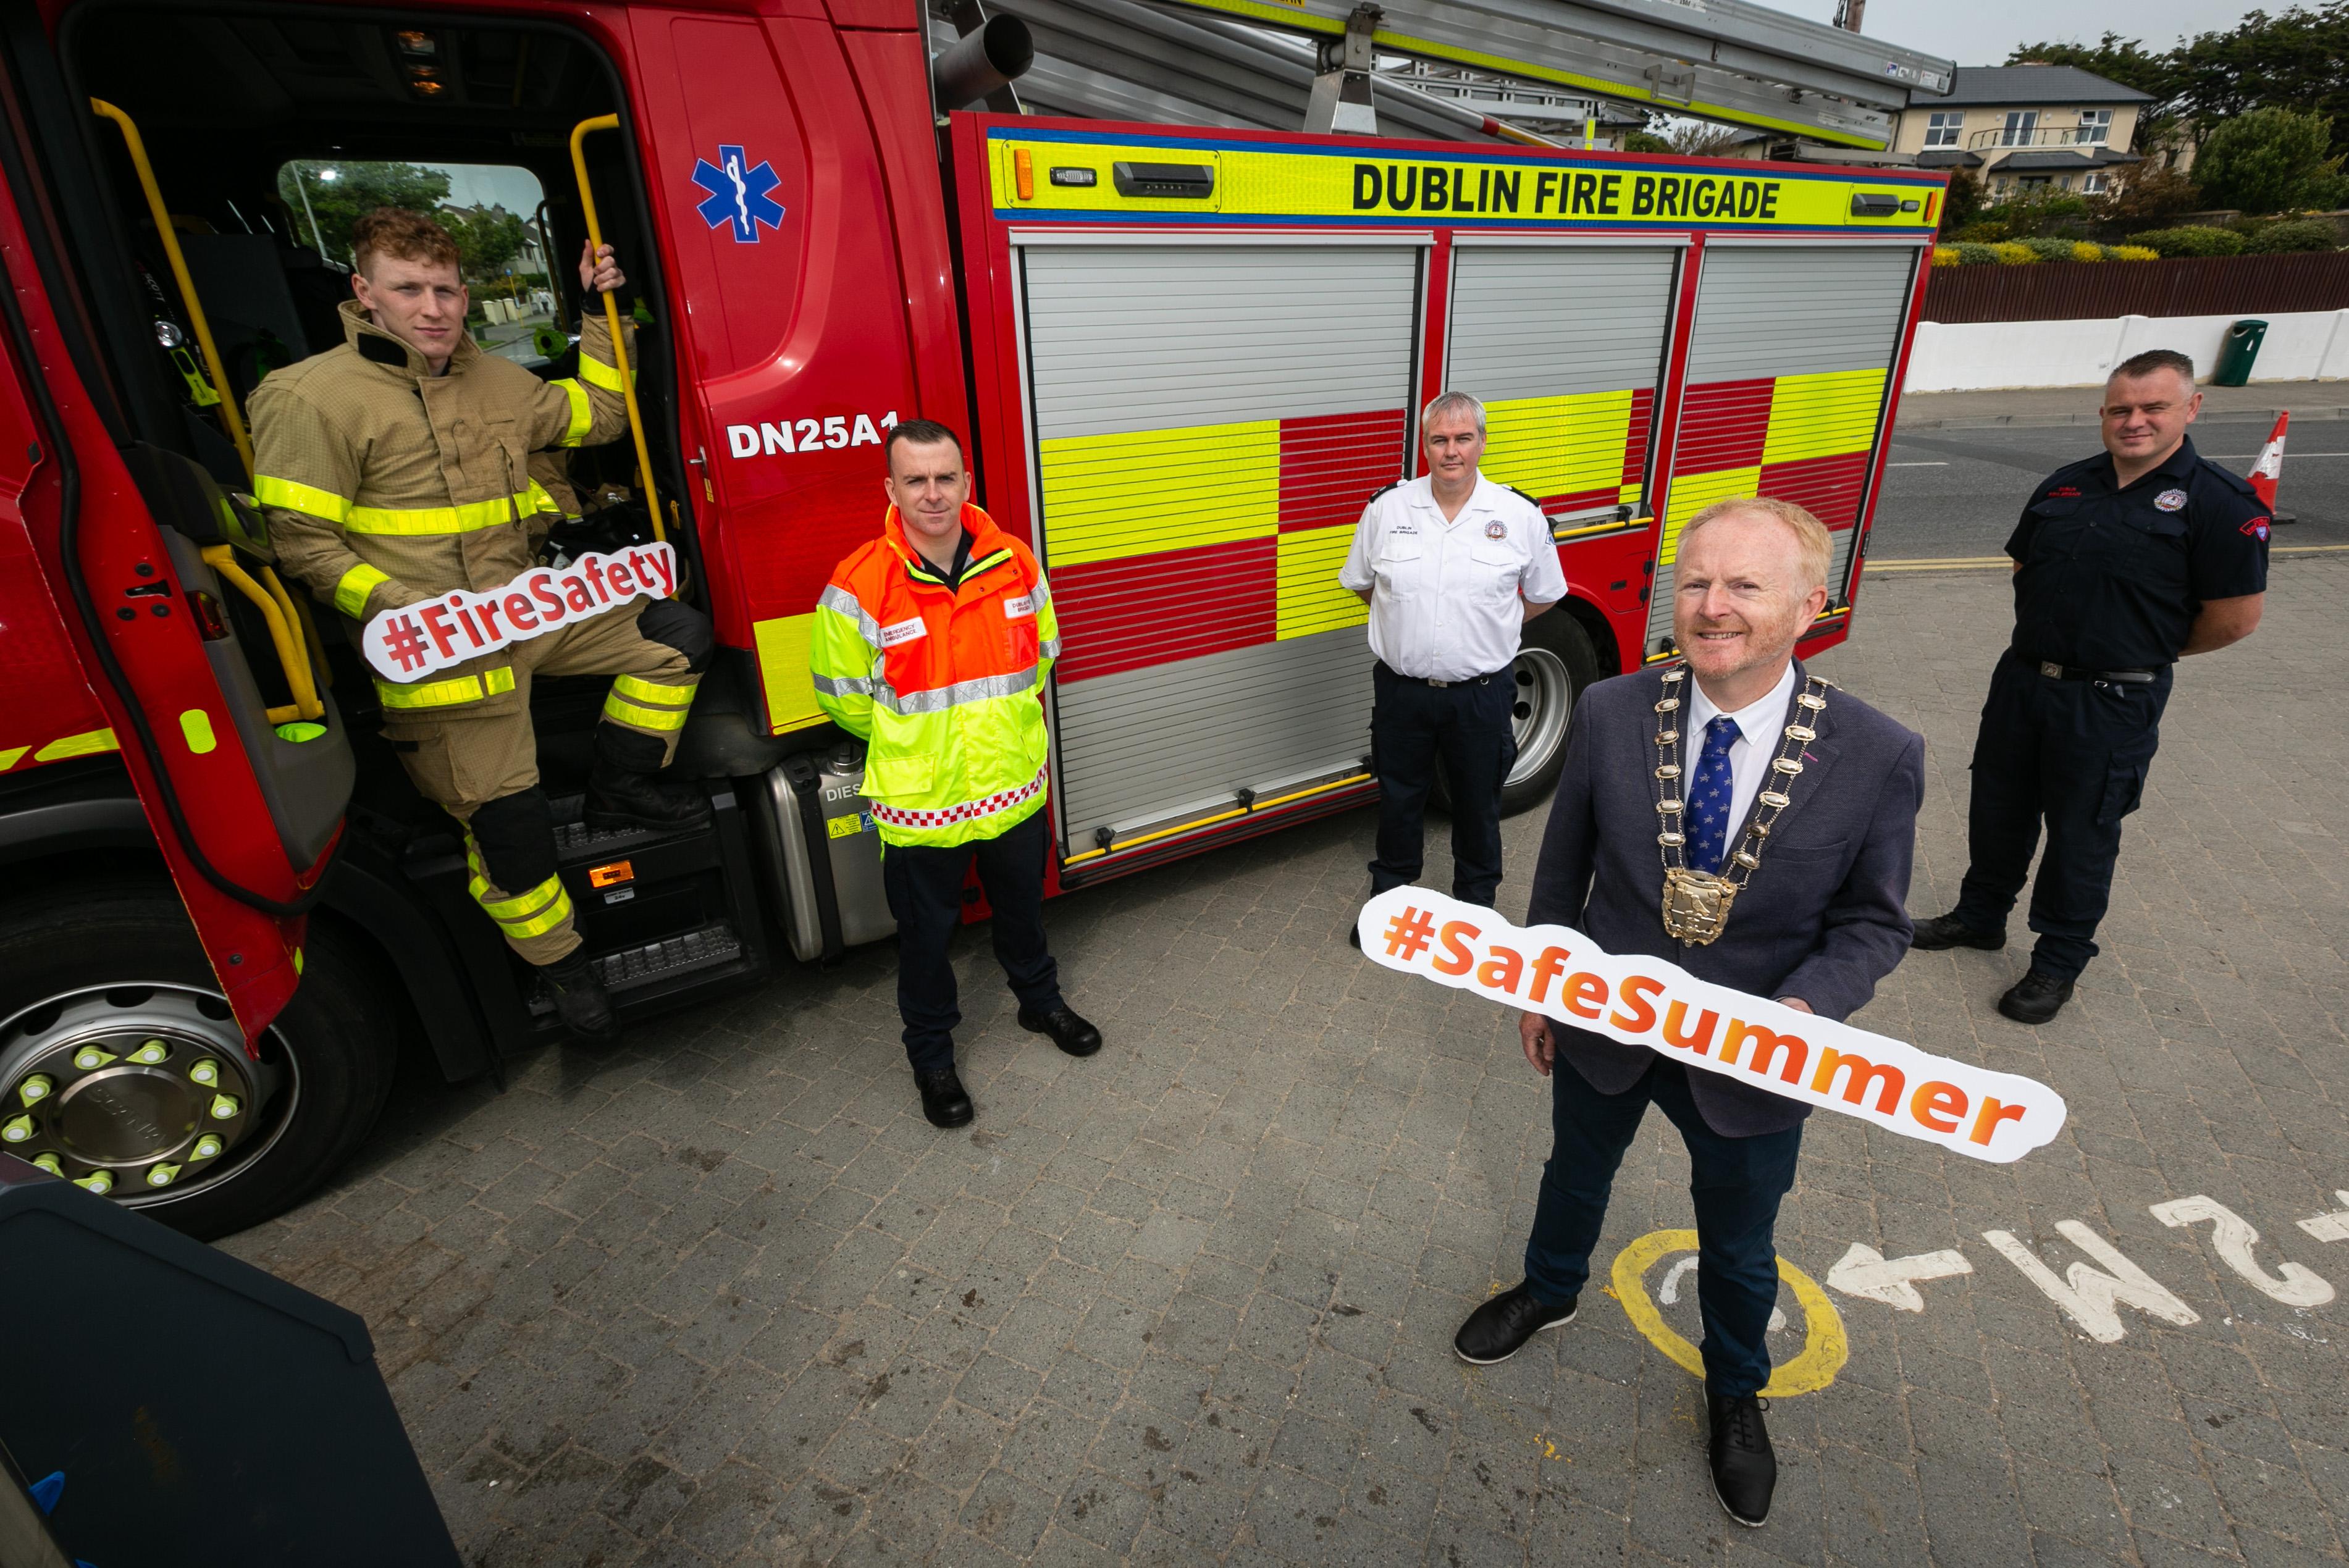 Safe Summer - Dublin Fire Brigade